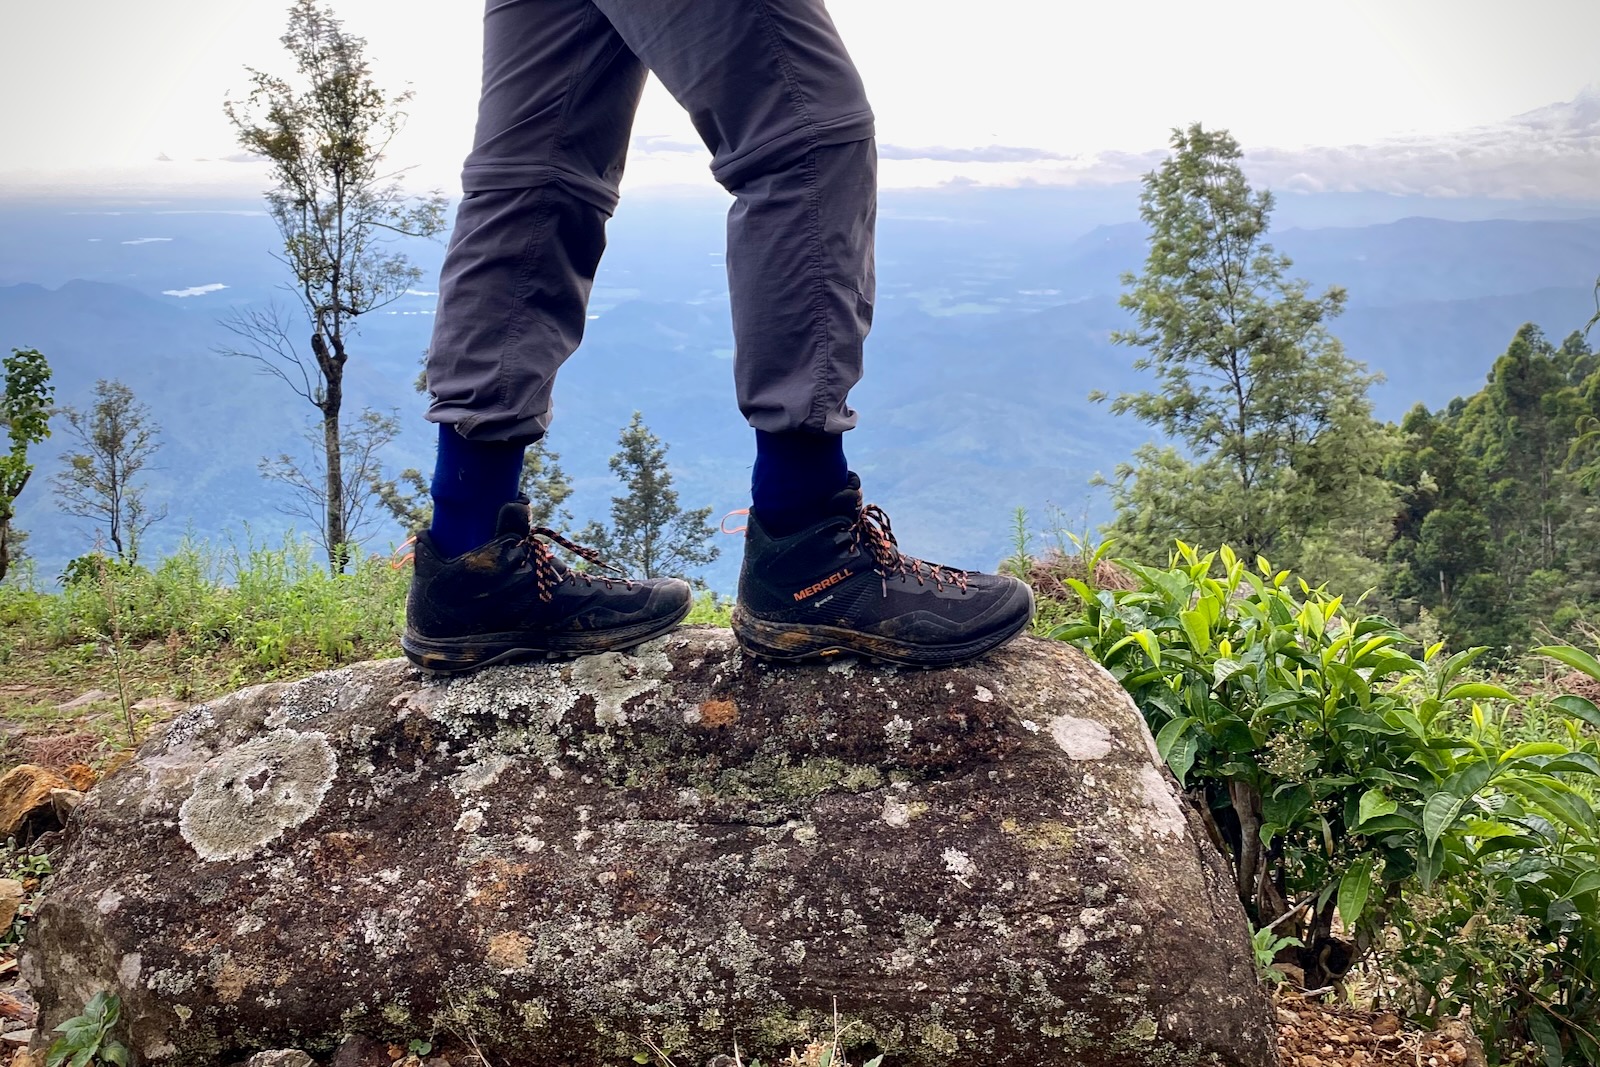 Merrell MQM 3 Mid GORE-TEX Hiking Boots